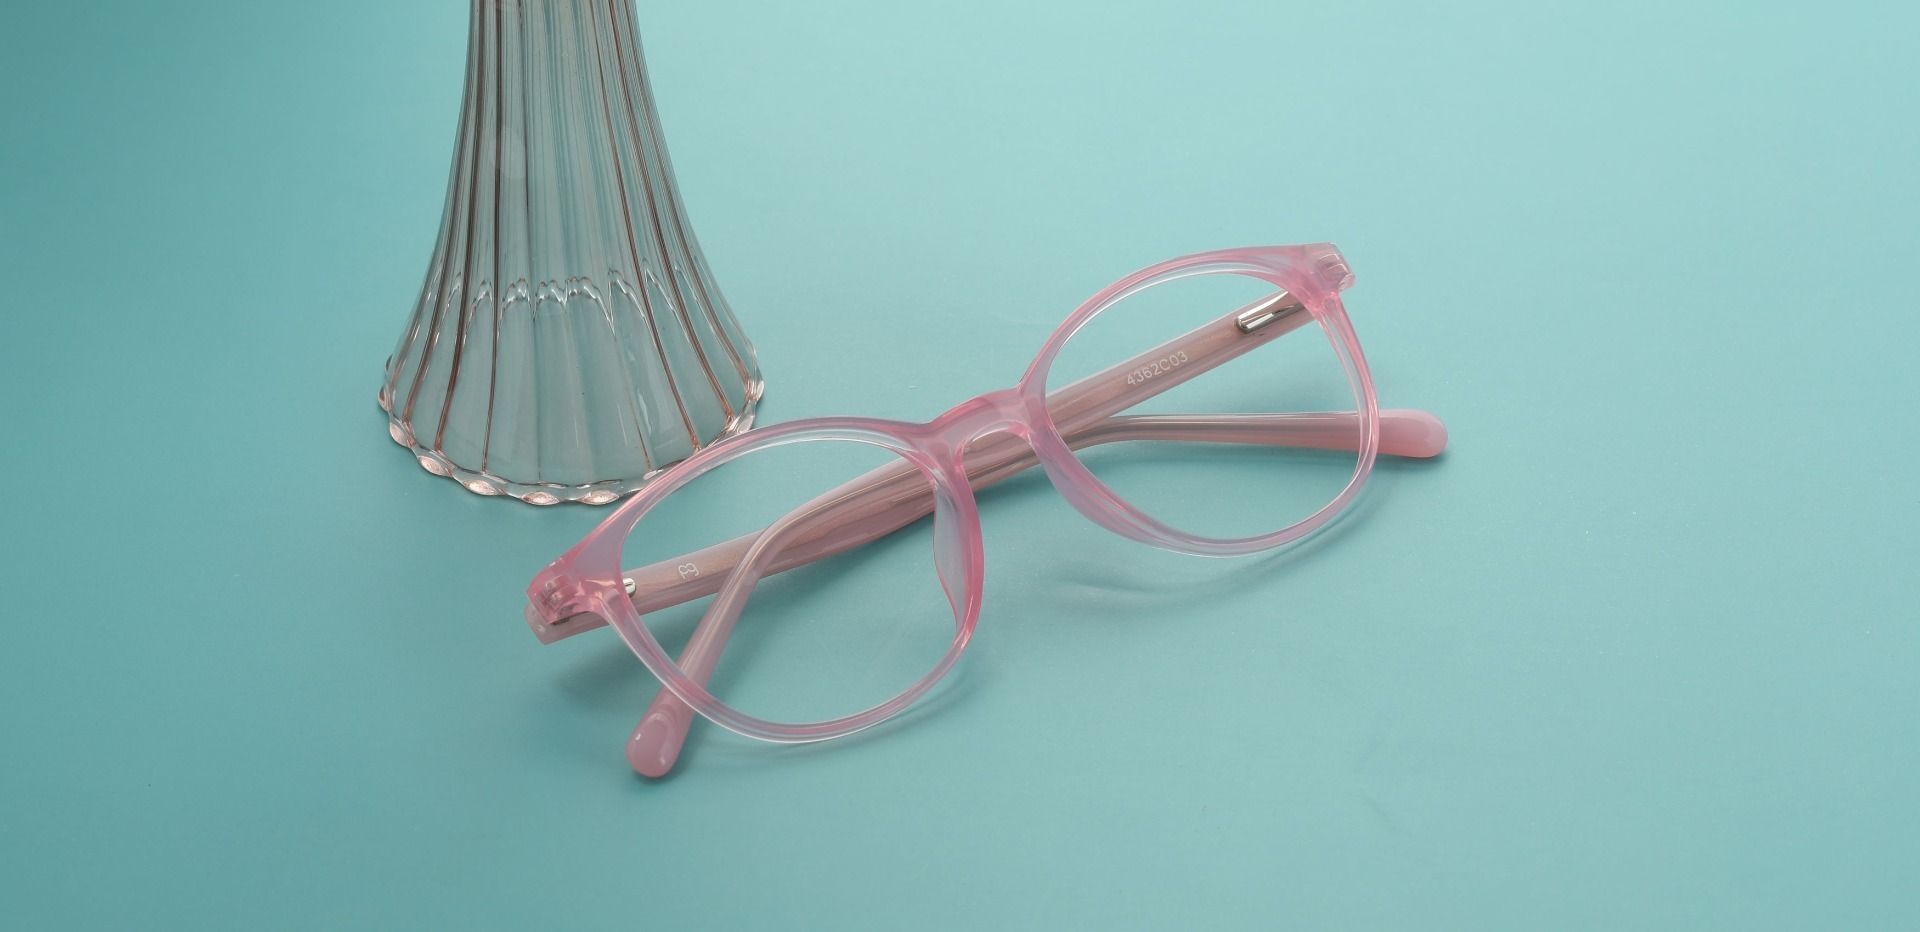 Gleason Oval Prescription Glasses - Pink